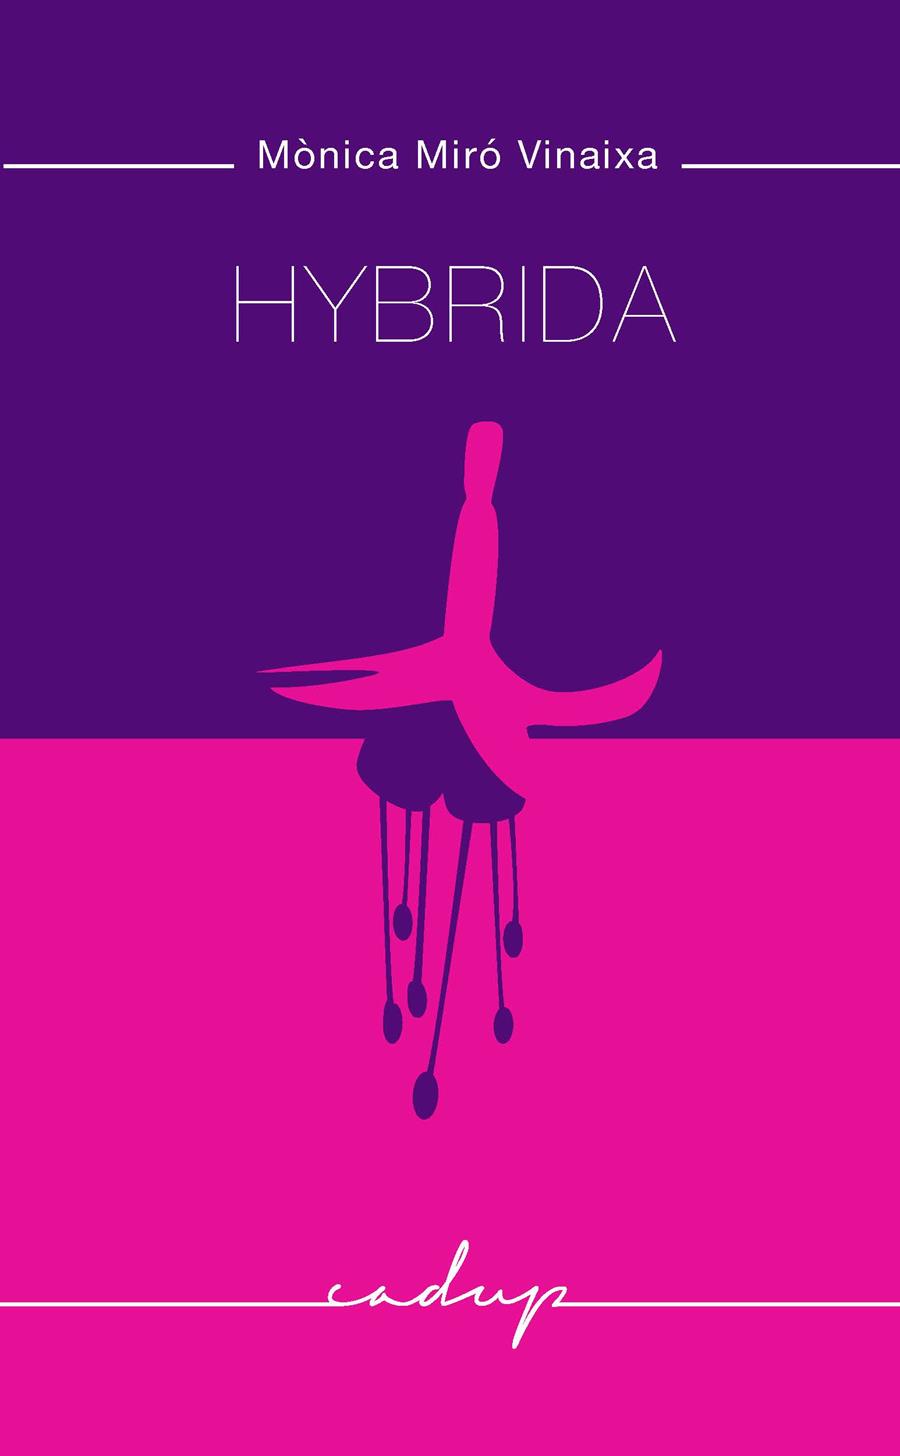 Hybrida | Miró Vinaixa, Mònica | Cooperativa autogestionària